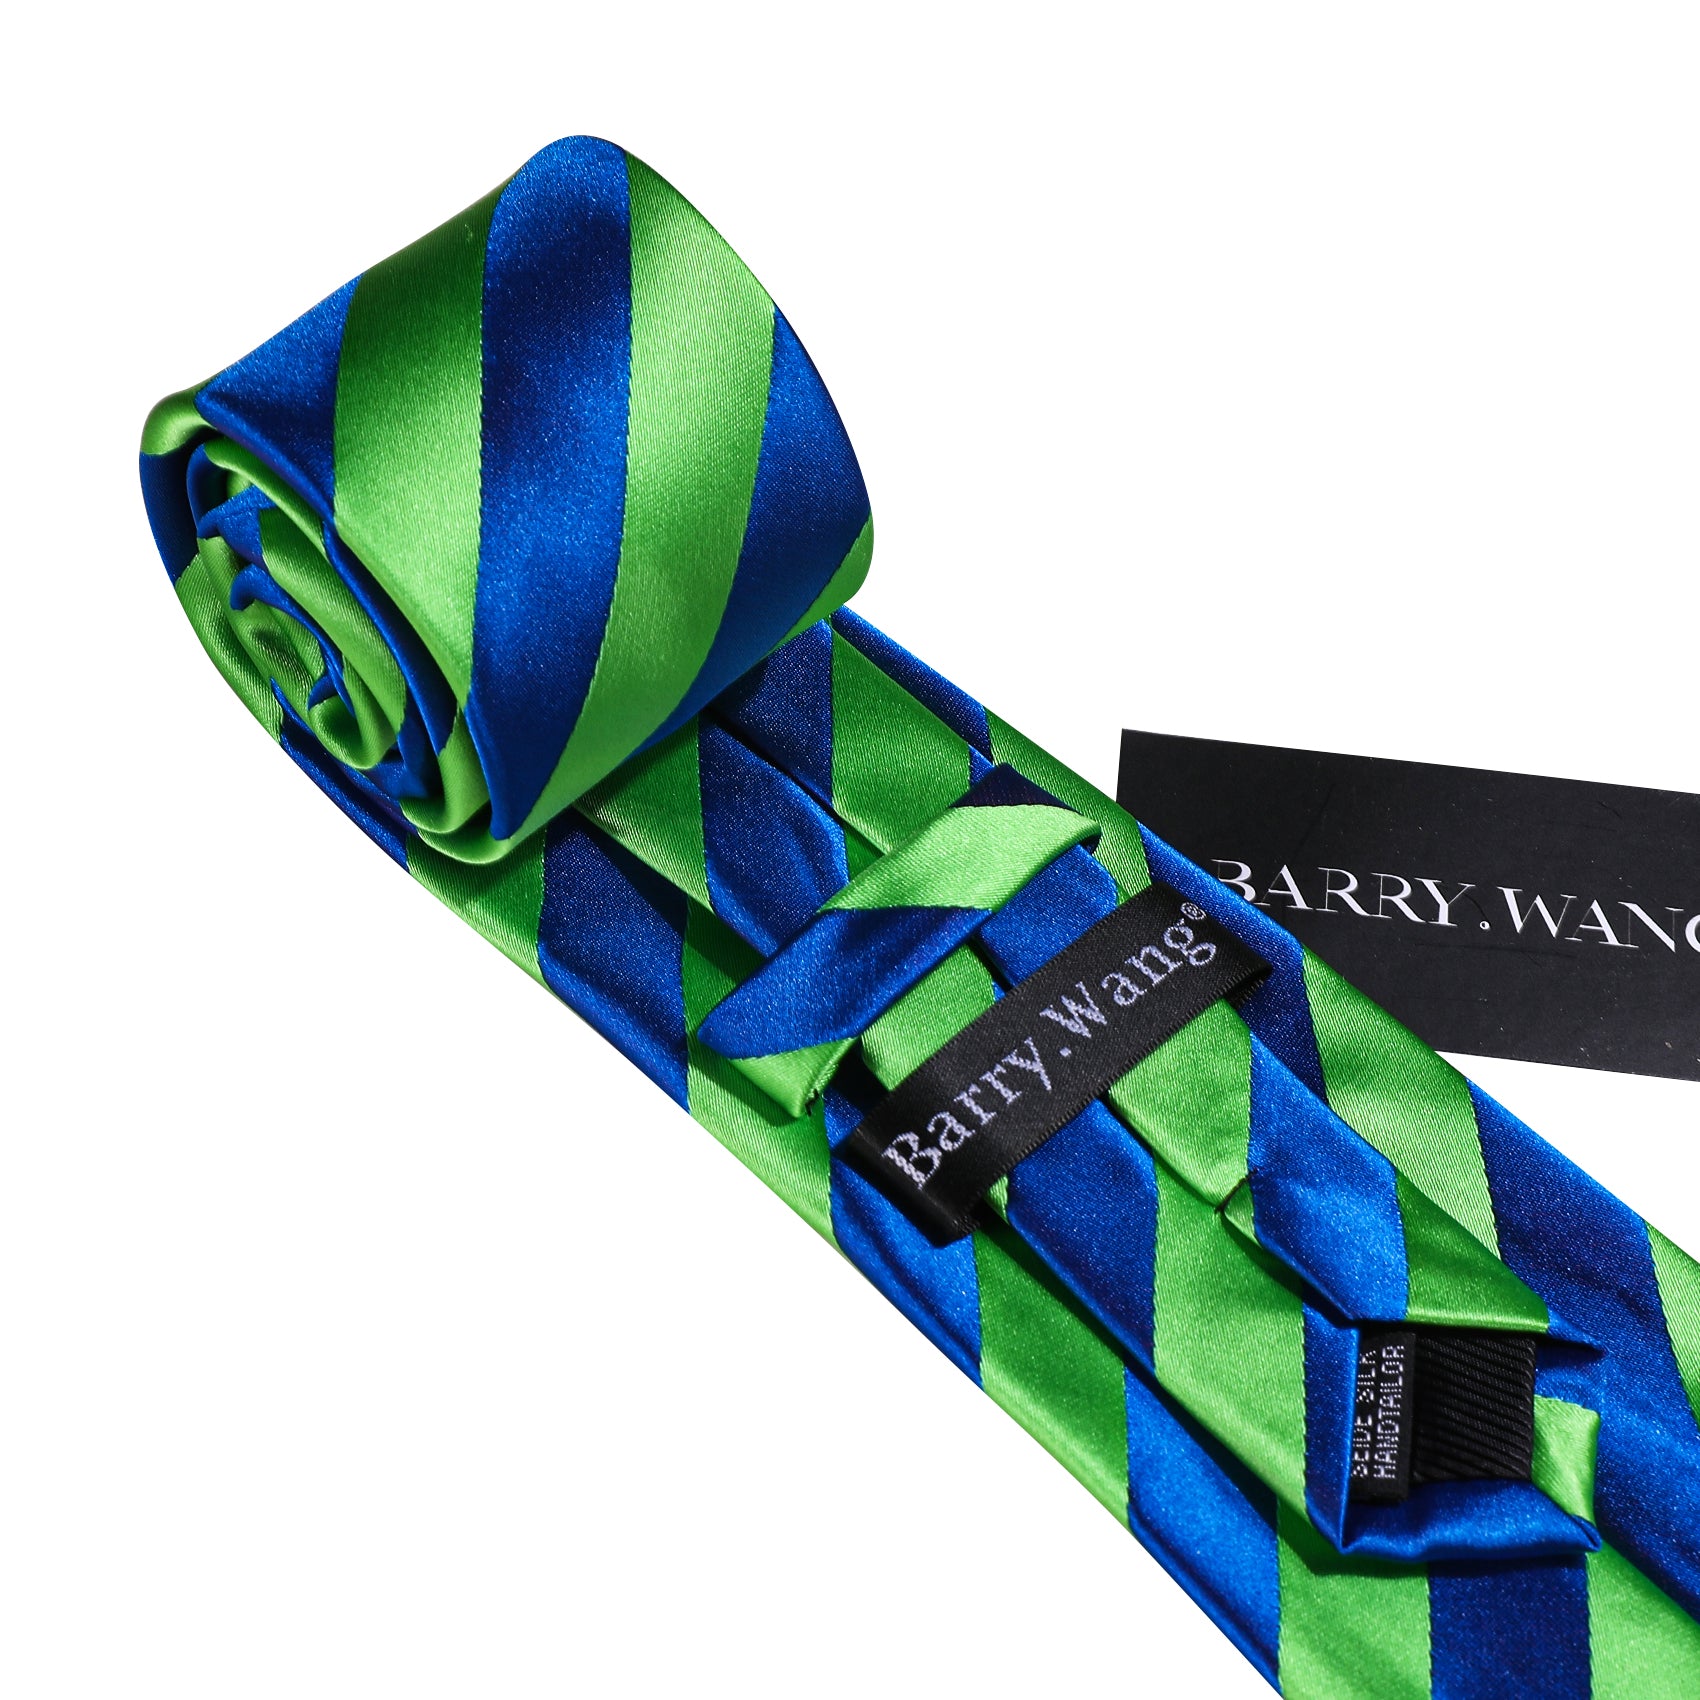 Barry wang blue grenn striped necktie 